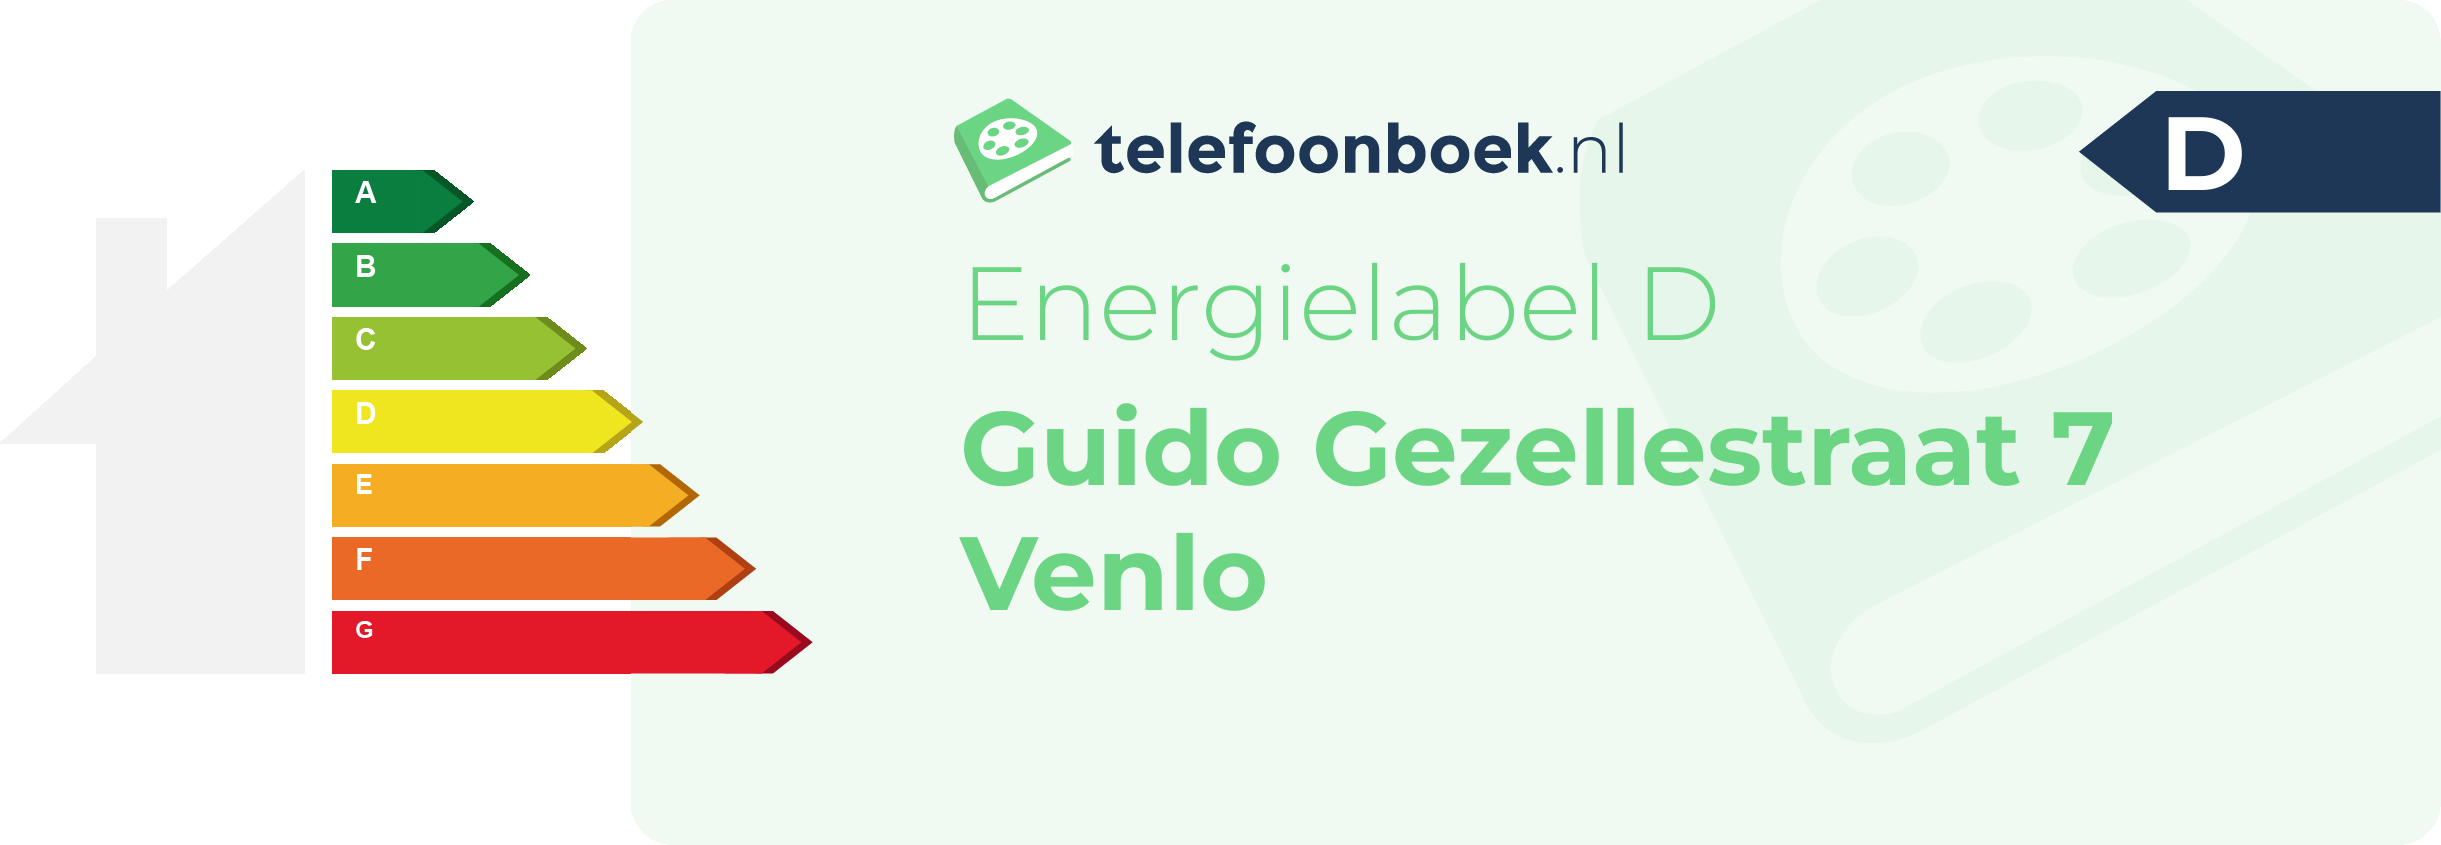 Energielabel Guido Gezellestraat 7 Venlo